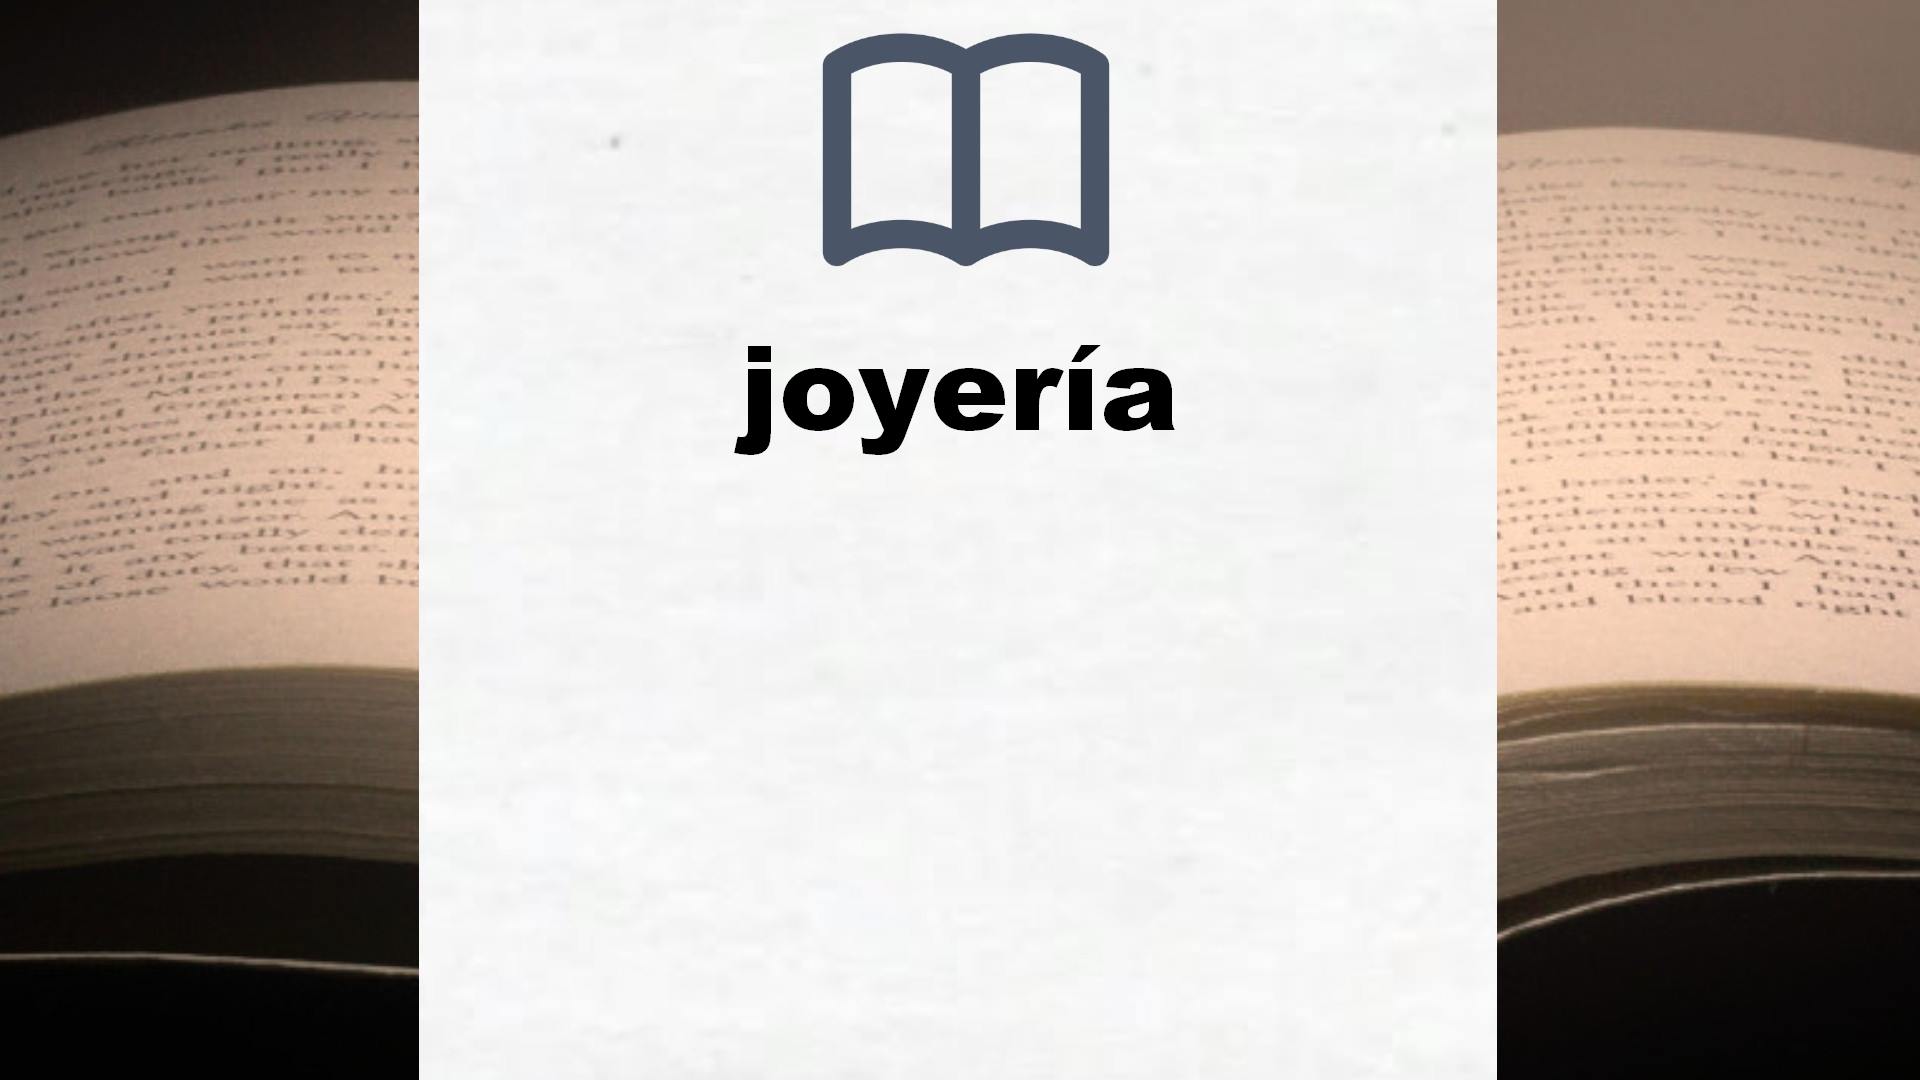 Libros sobre joyería